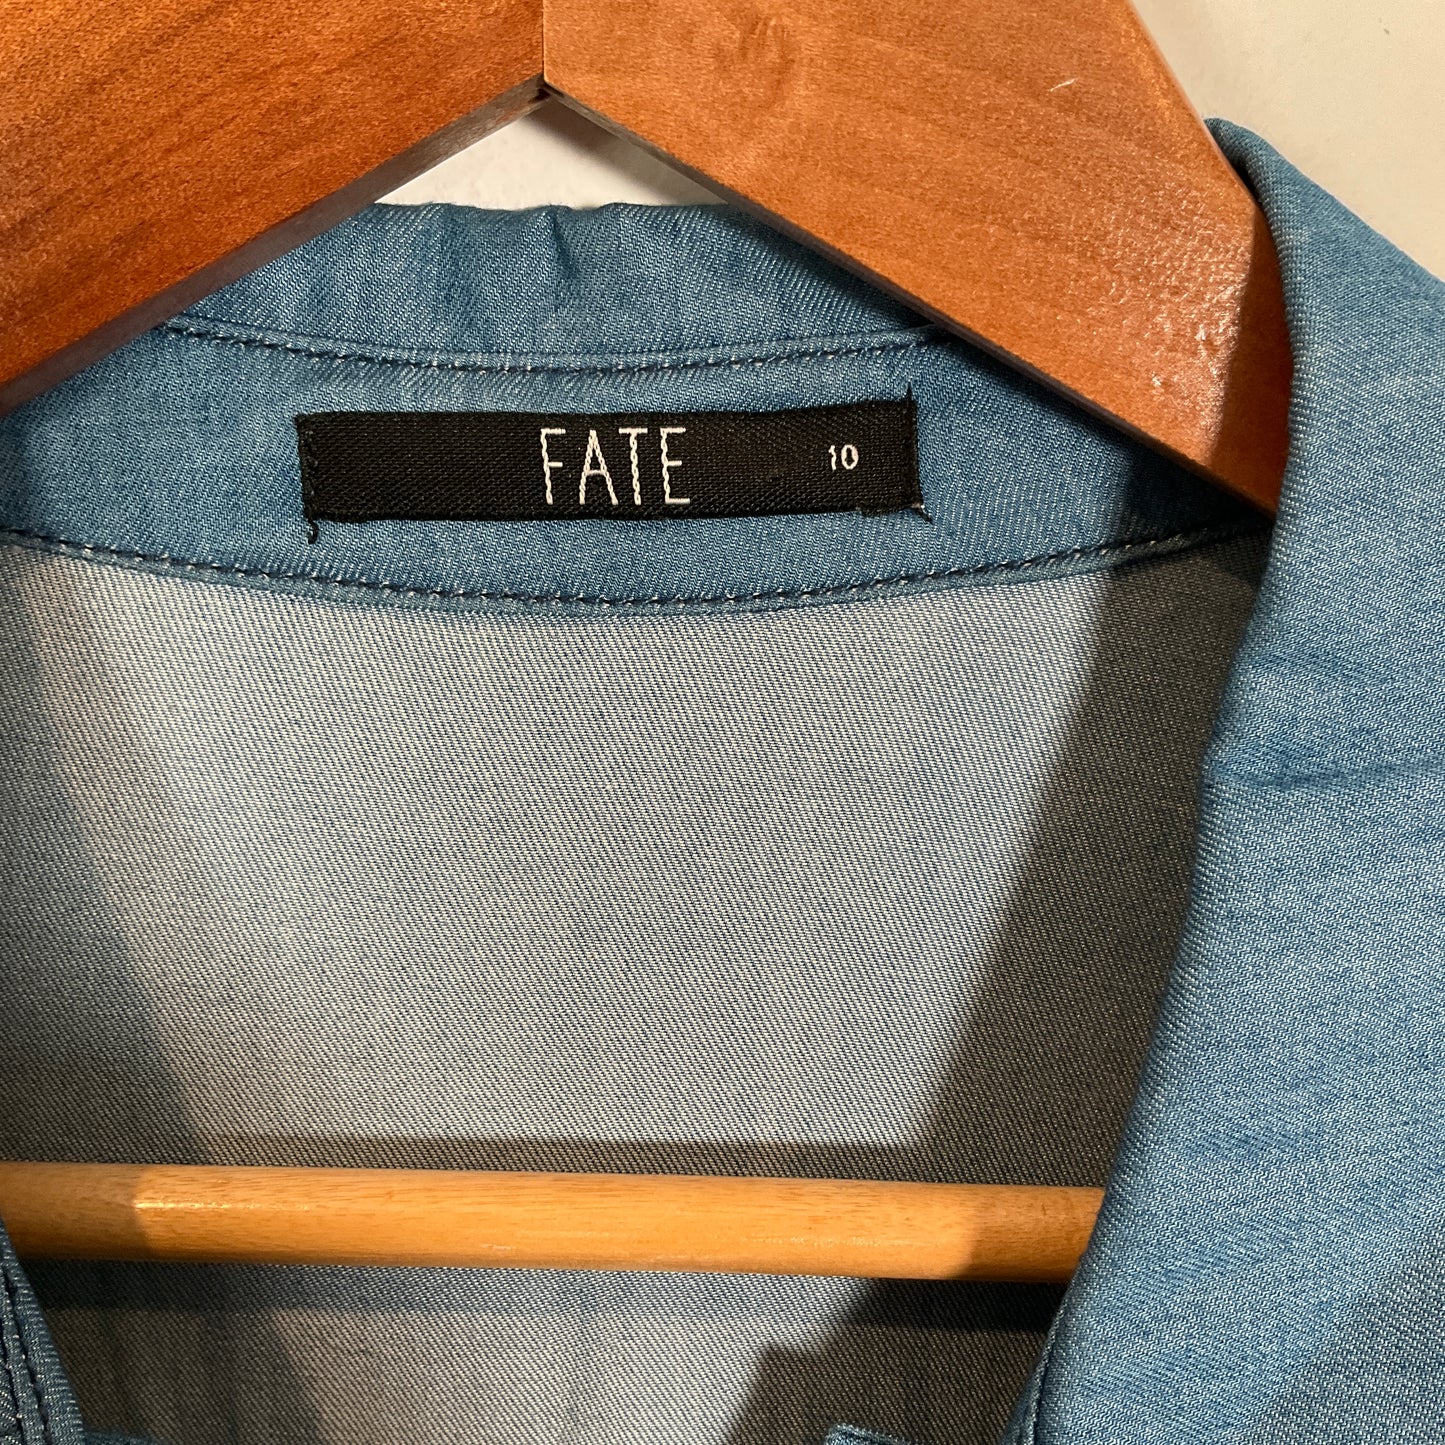 Fate - Shirt Dress